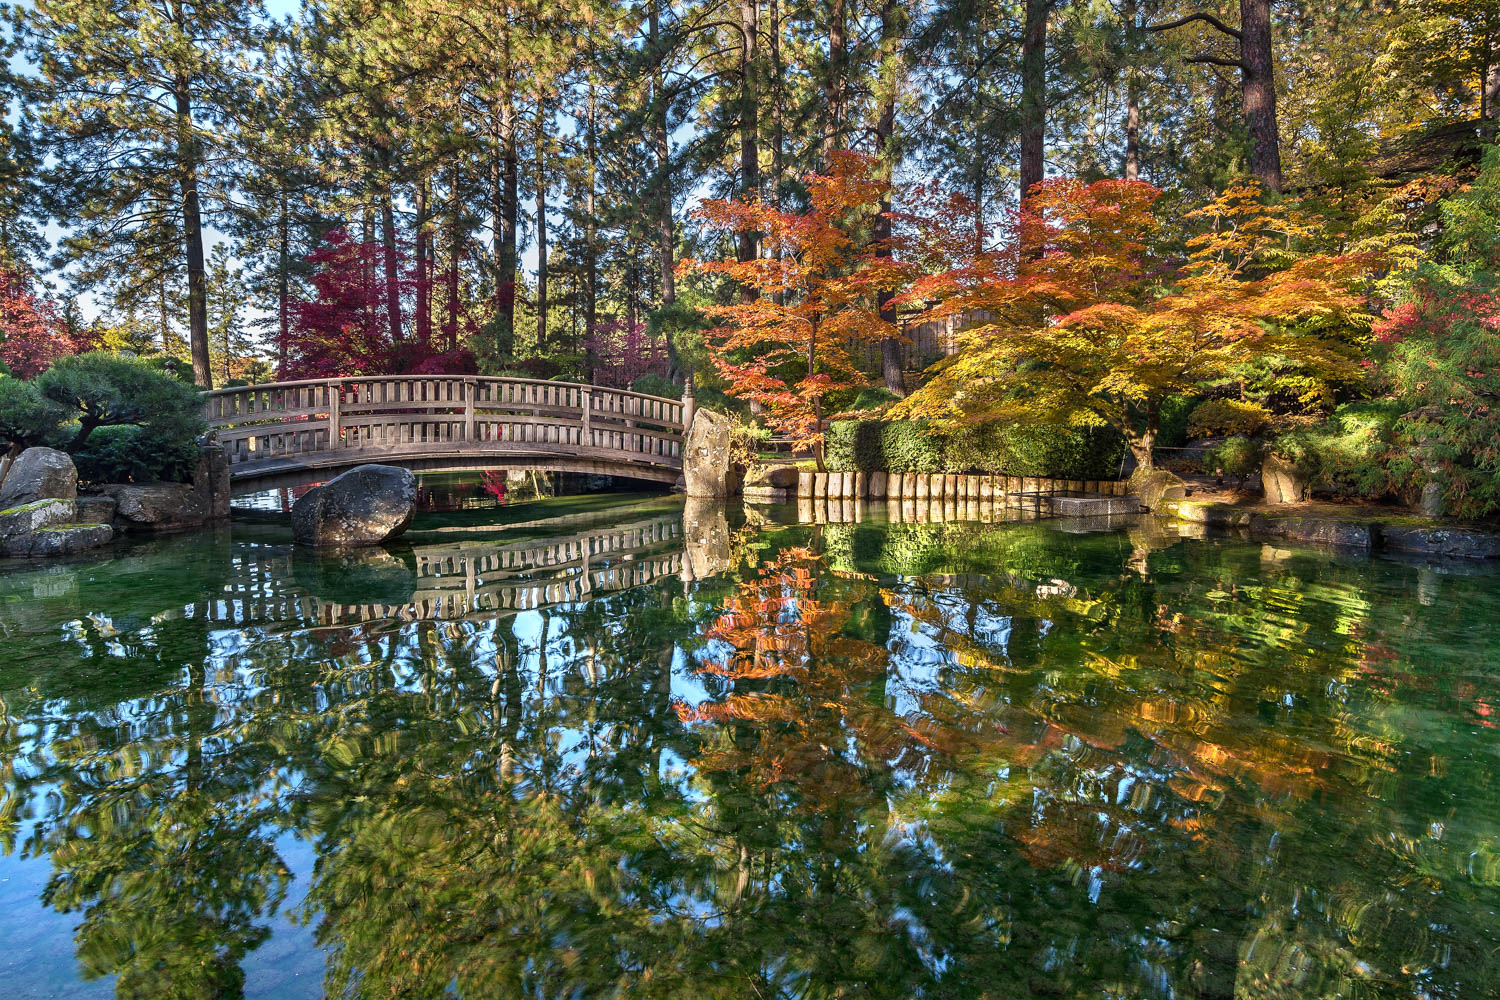 Fall colors at the Nishinomiya Japanese Garden in Spokane, Washington.